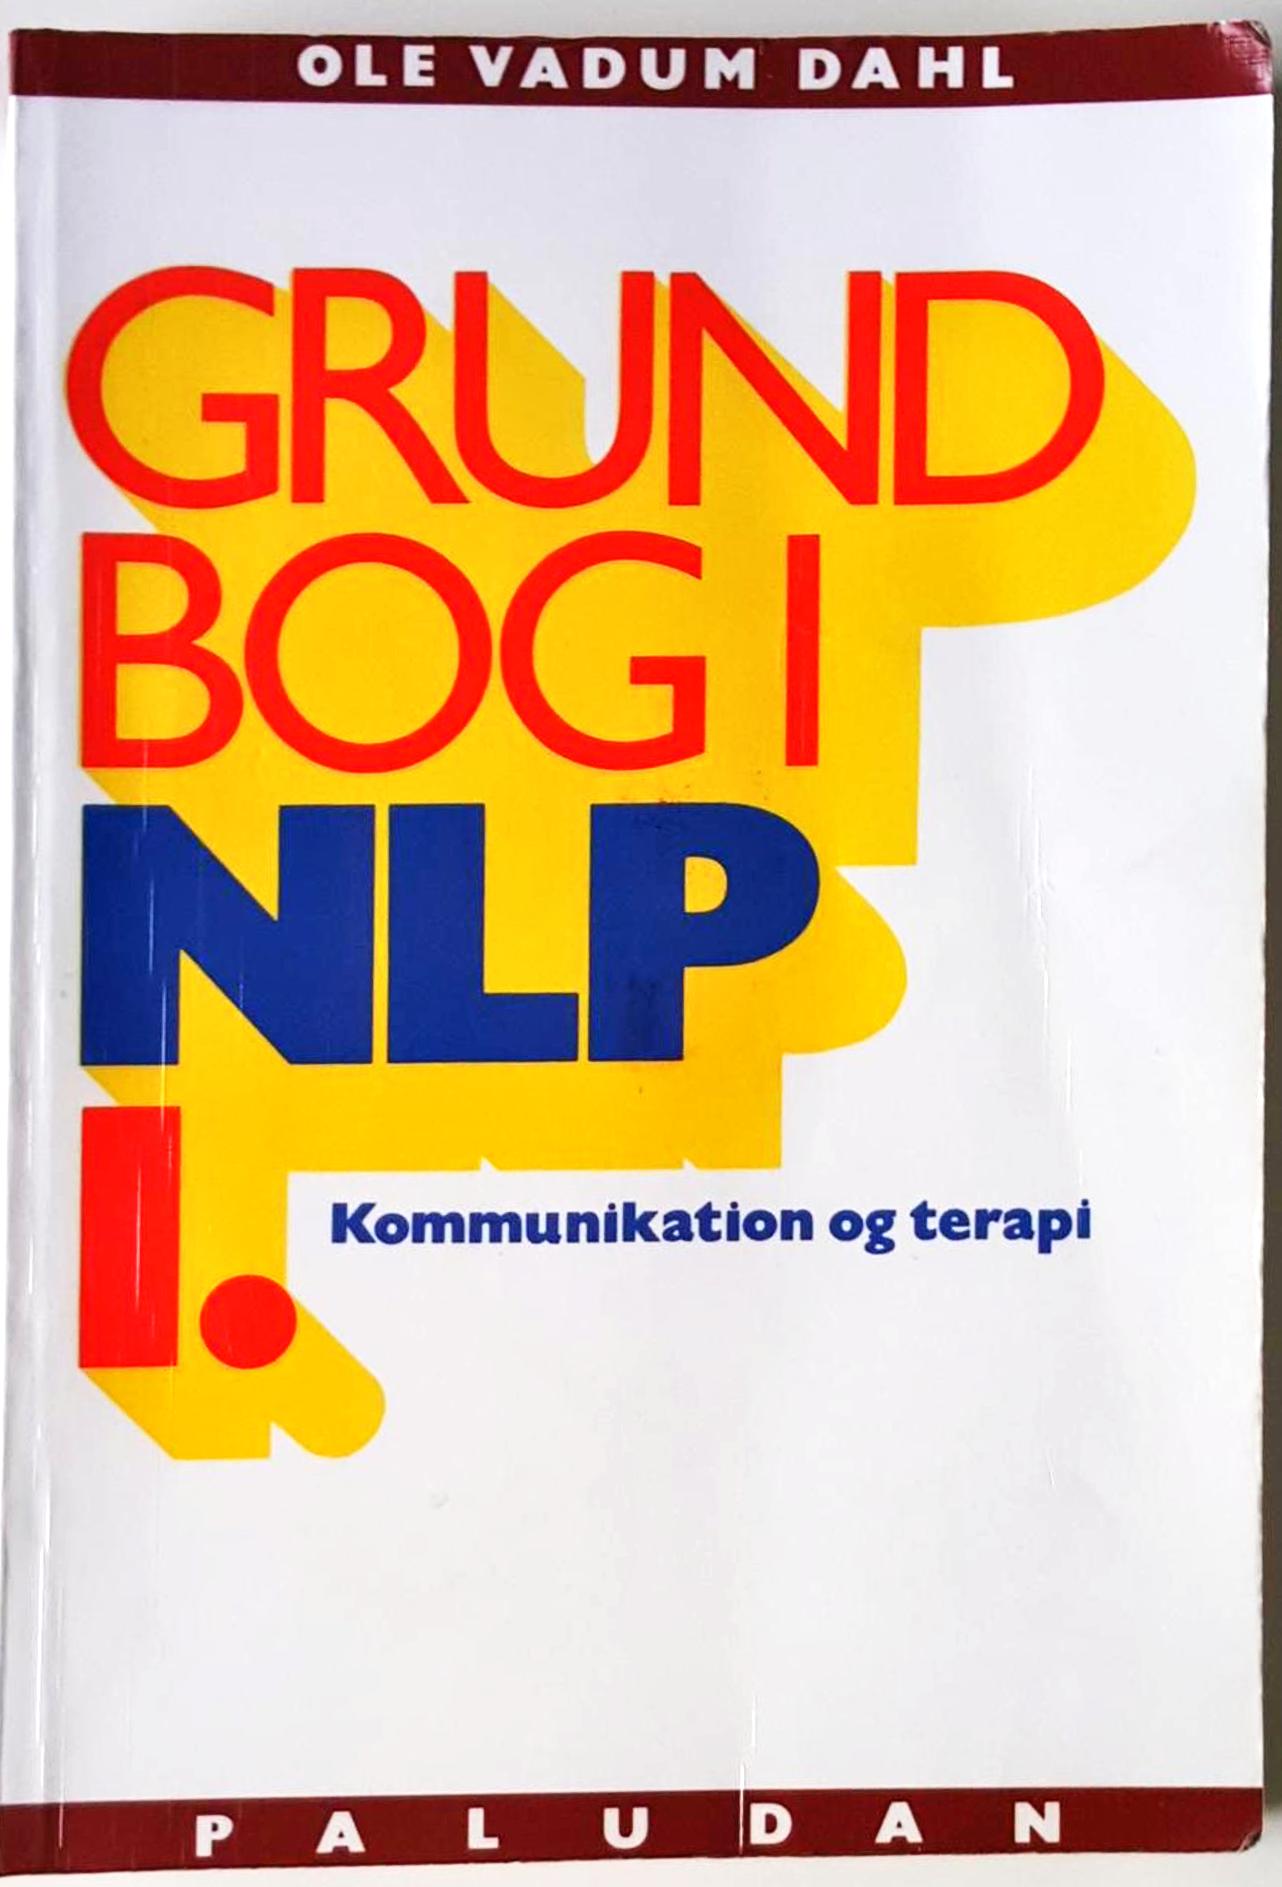 Grundbog i NLP kommunikation og terapi (Bind 1: Personlighedens sprog) Book Cover